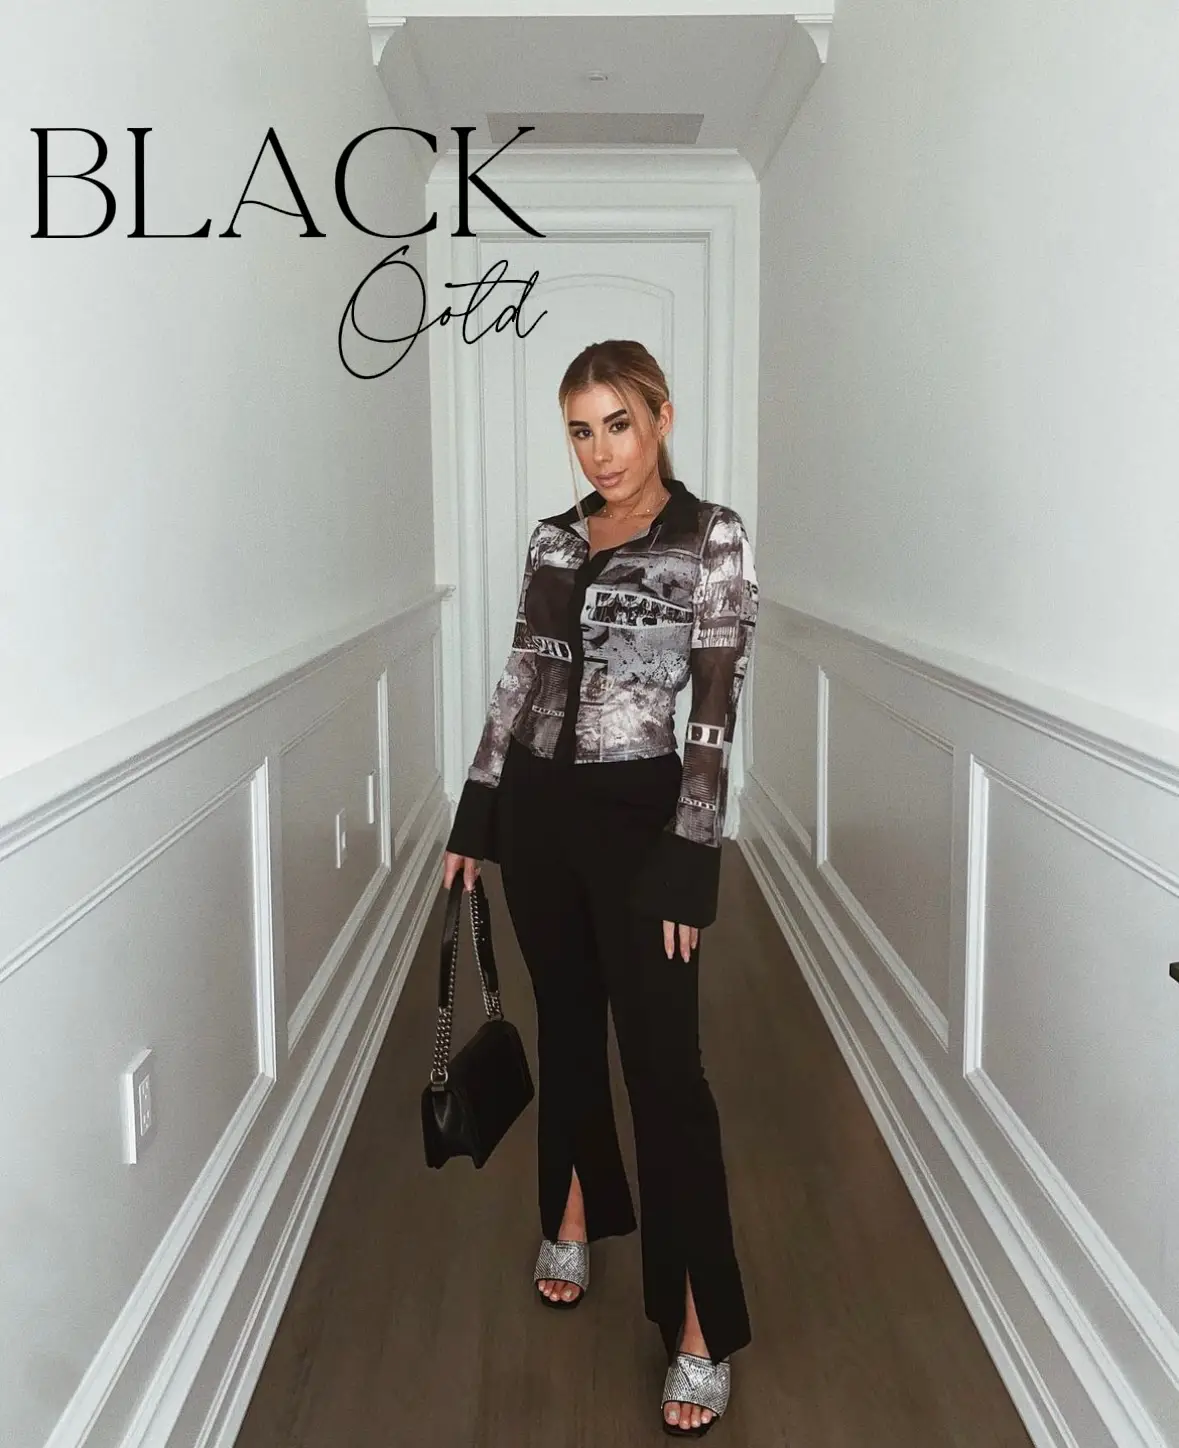 Les comparto algunas ideas de looks con una camisa negra básica #moda